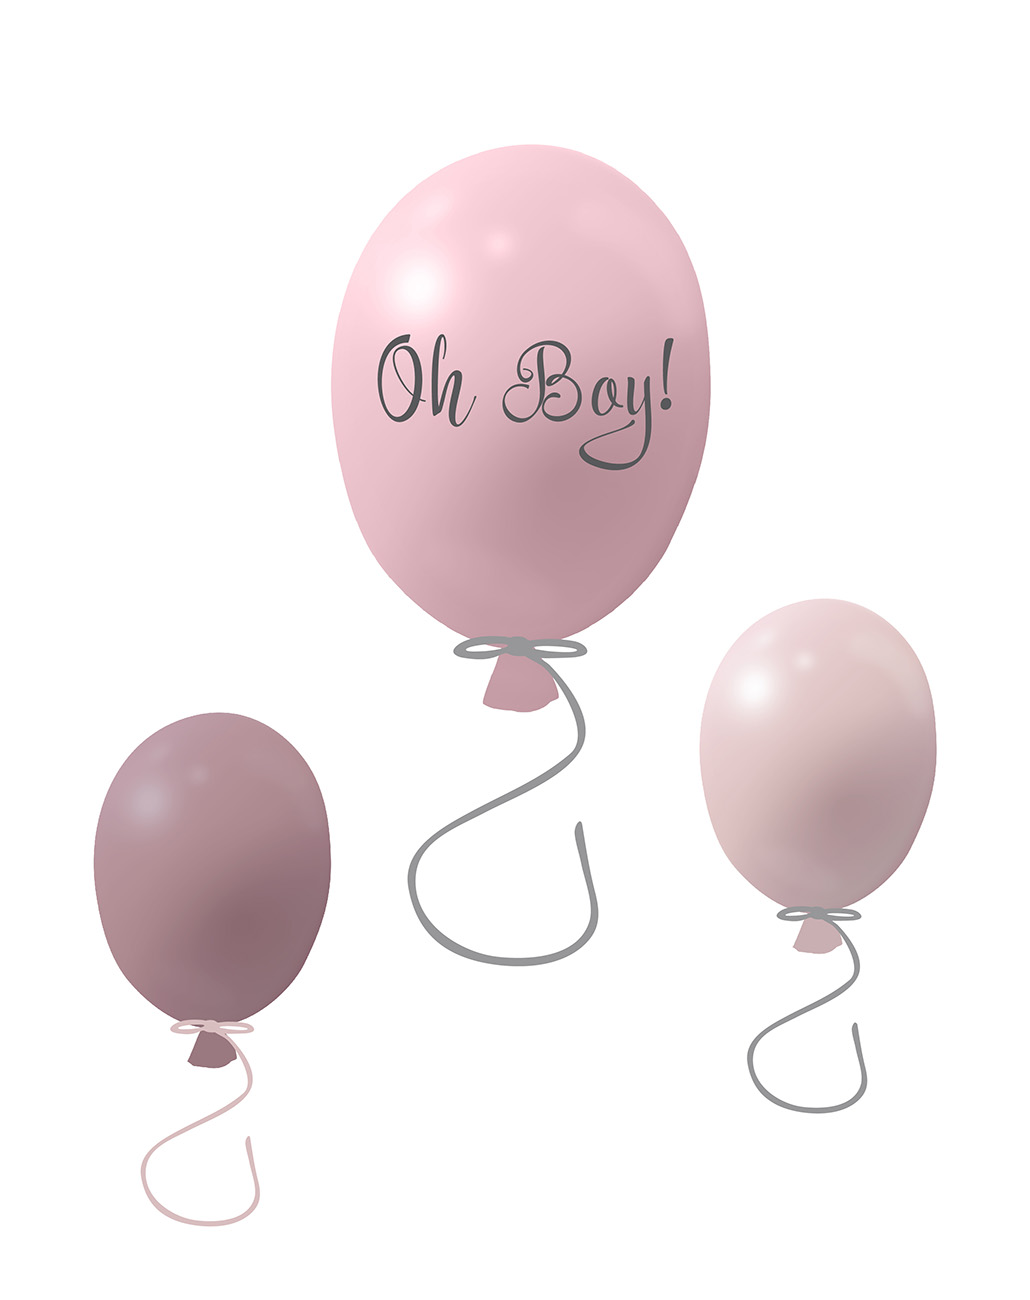 Väggklistermärke partyballonger 3-pack, rose Väggklistermärke bestående av en stor rosa ballong med texten Oh boy och två mindre ballonger